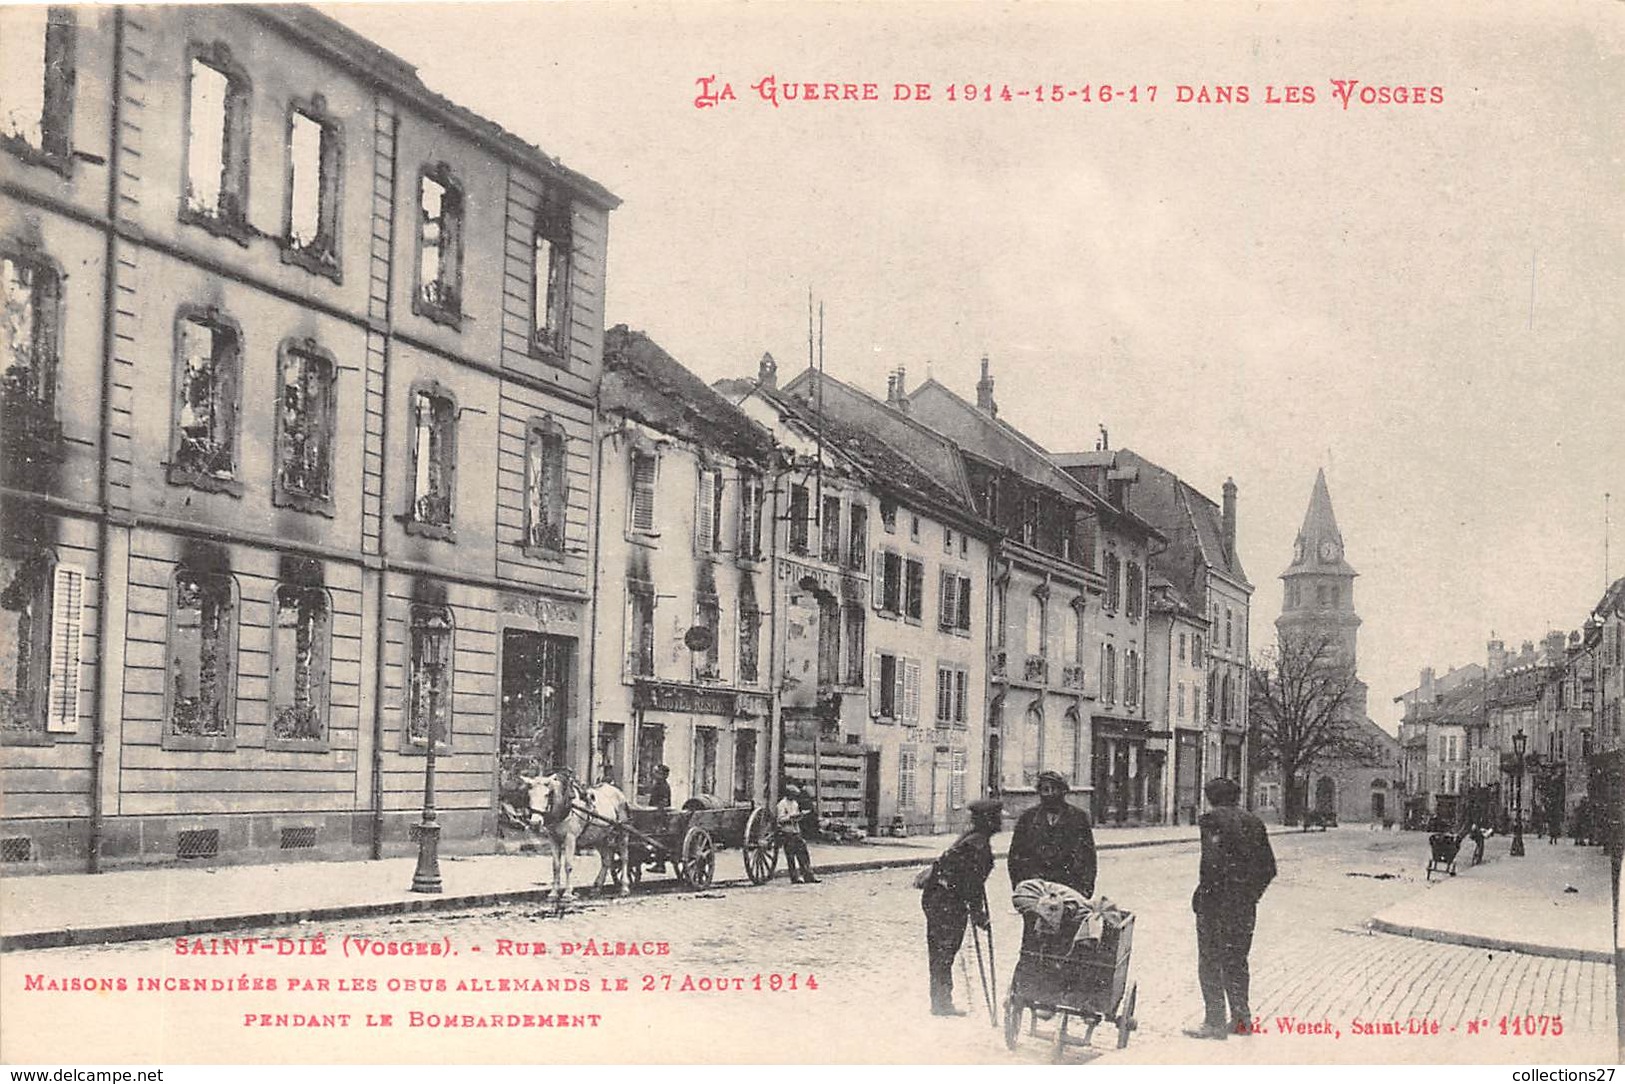 88-SAINT-DIE- RUE D'ALSACE- MAISONS INCENDIEES PAR LES OBUS ALLEMANDS LE 27 AOUT 1914PENDANT LES BONBARDEMENTS - Saint Die